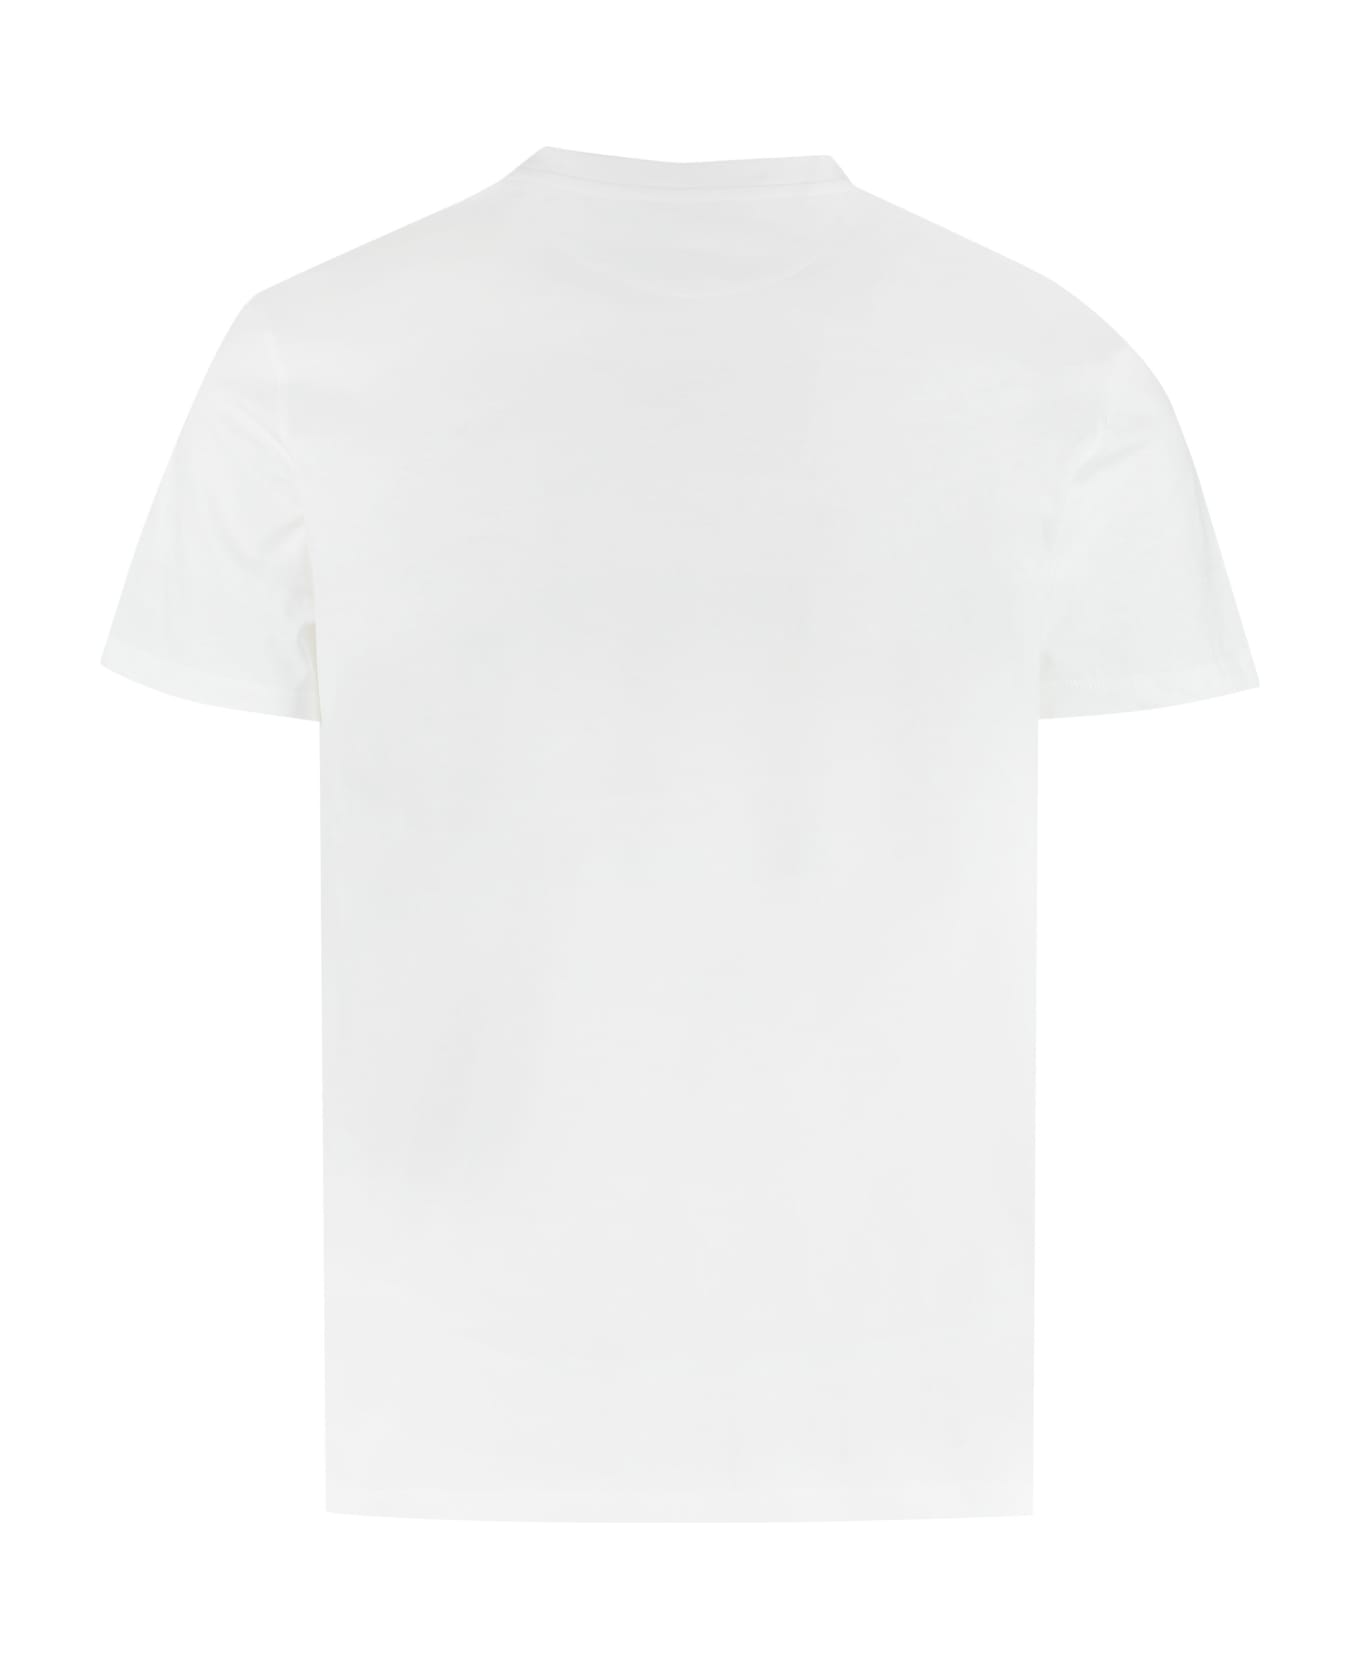 Valentino Cotton Crew-neck T-shirt - White